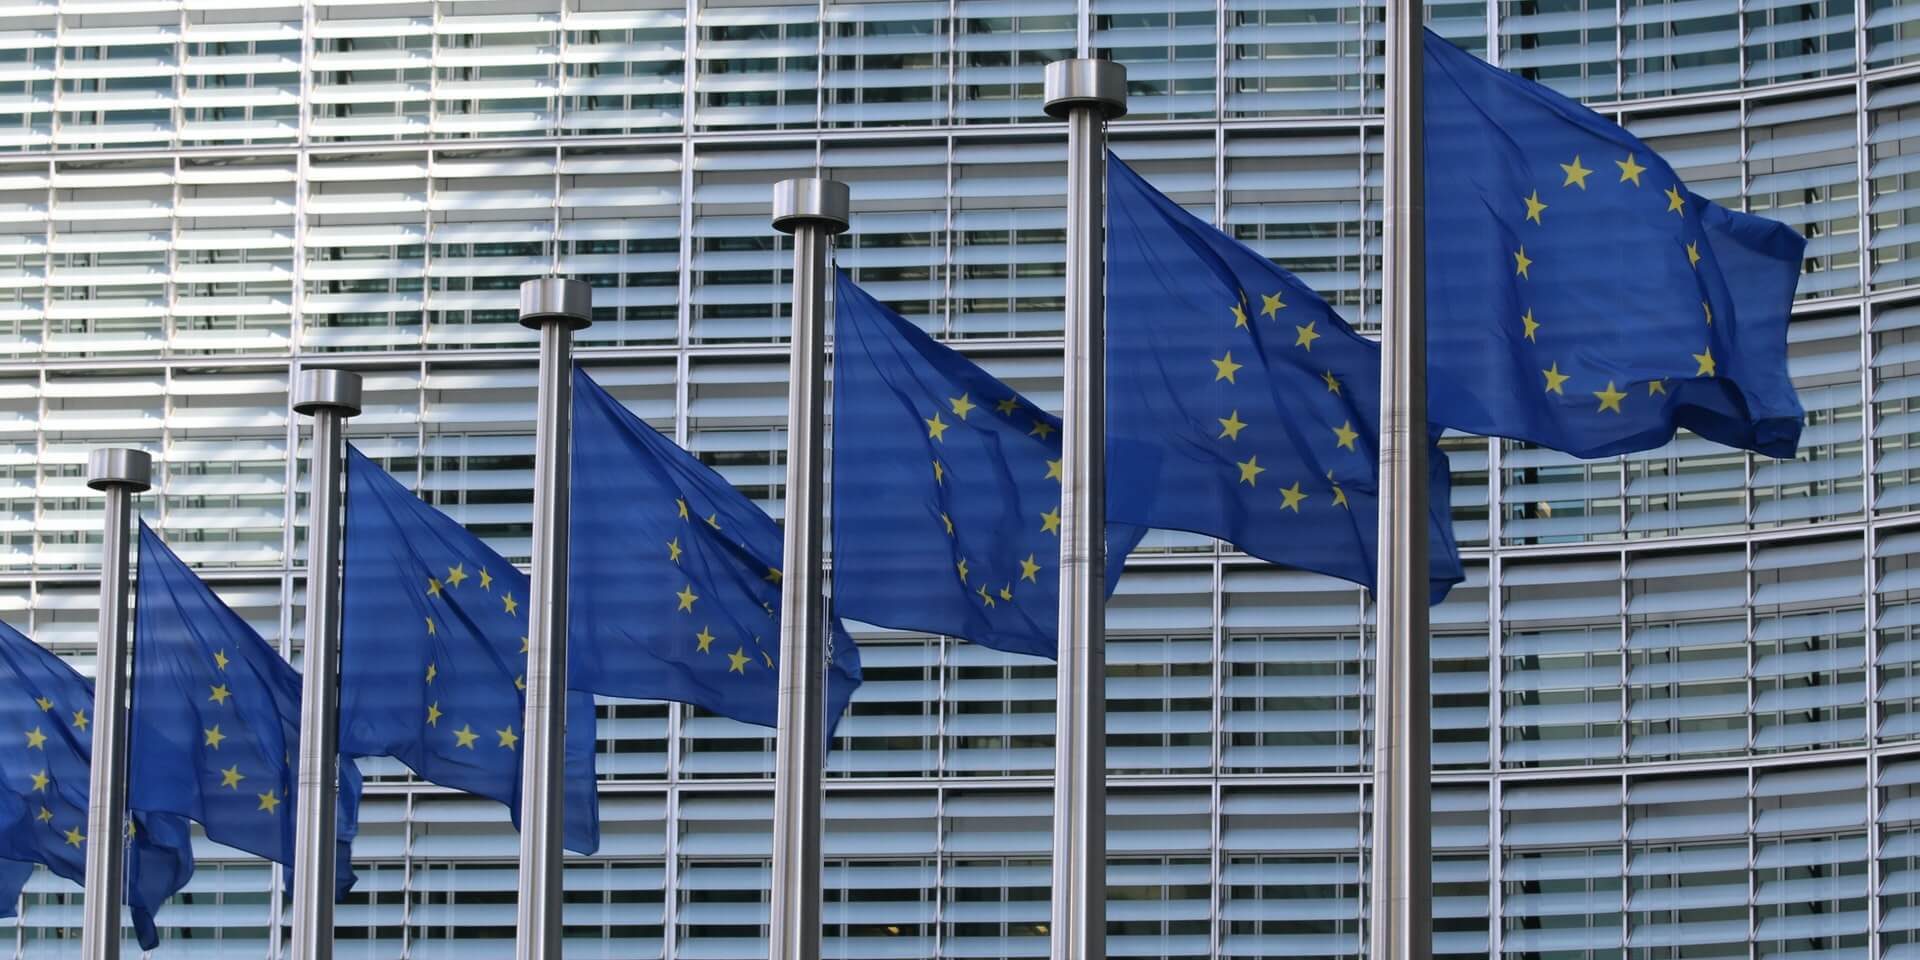 Seitsemän liehuvaa Euroopan unionin lippua harmaan rakennuksen edessä.